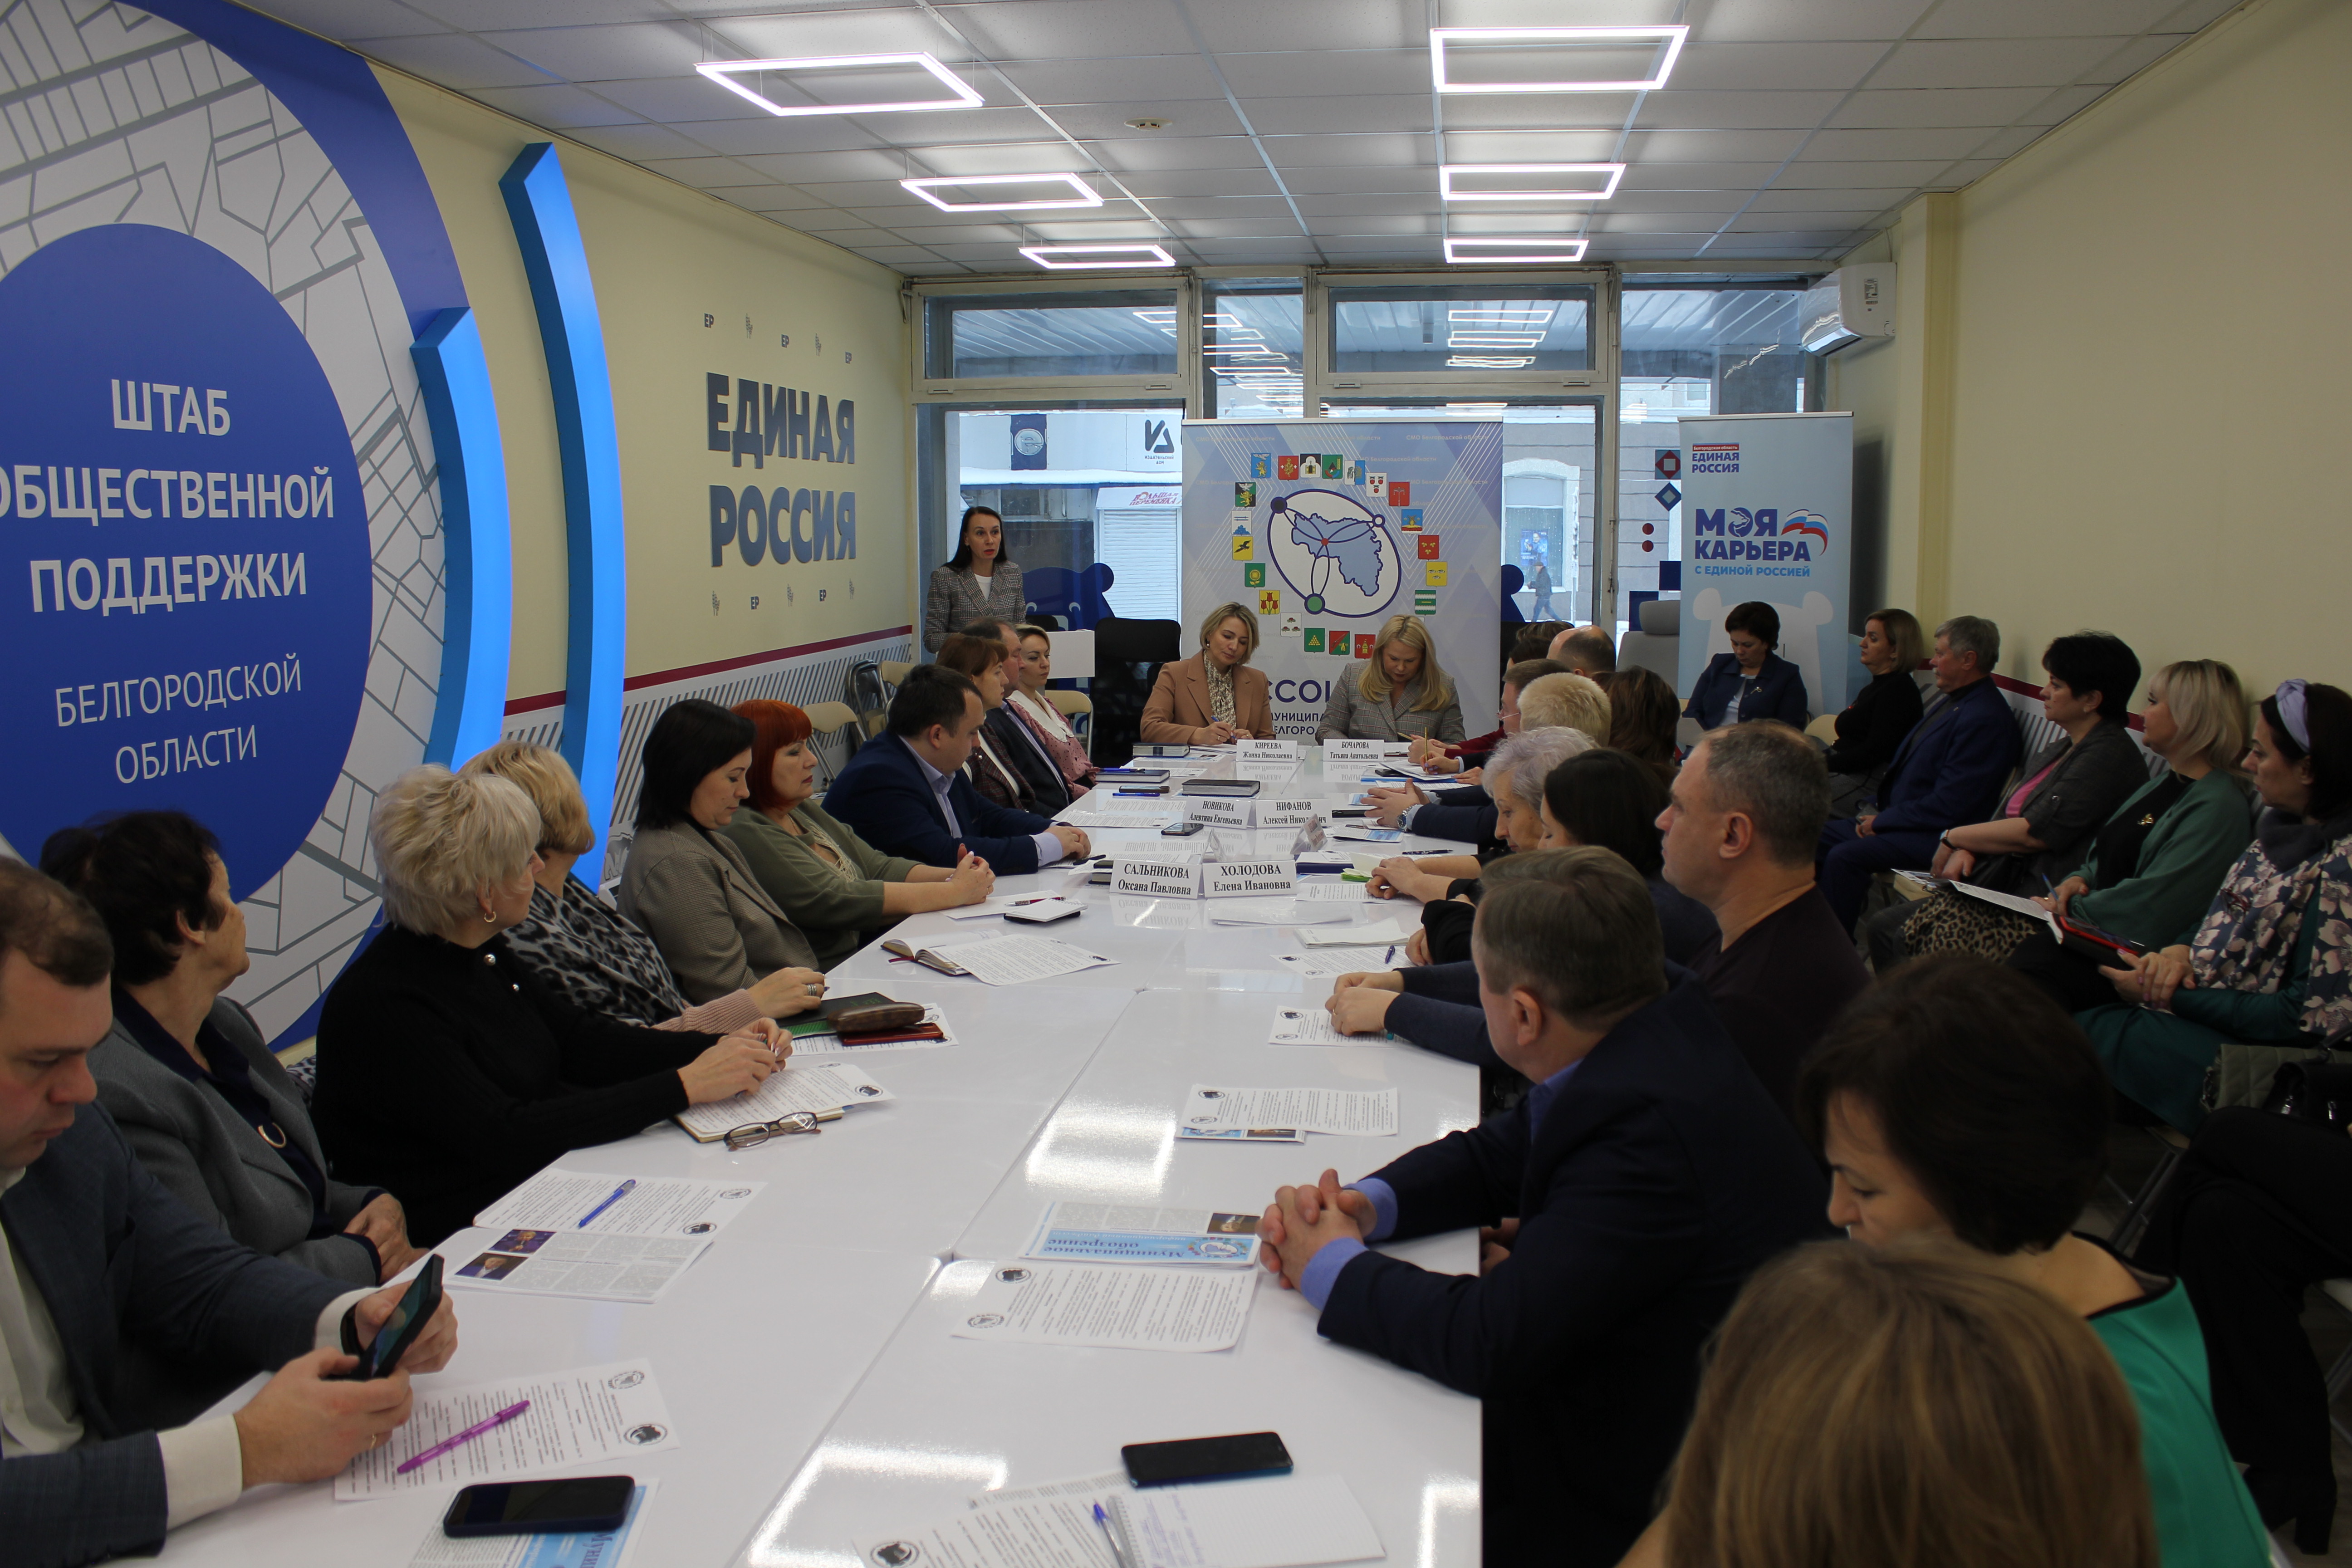 Ассоциация совместно с Уполномоченным по правам человека в Белгородской области провела круглый стол.